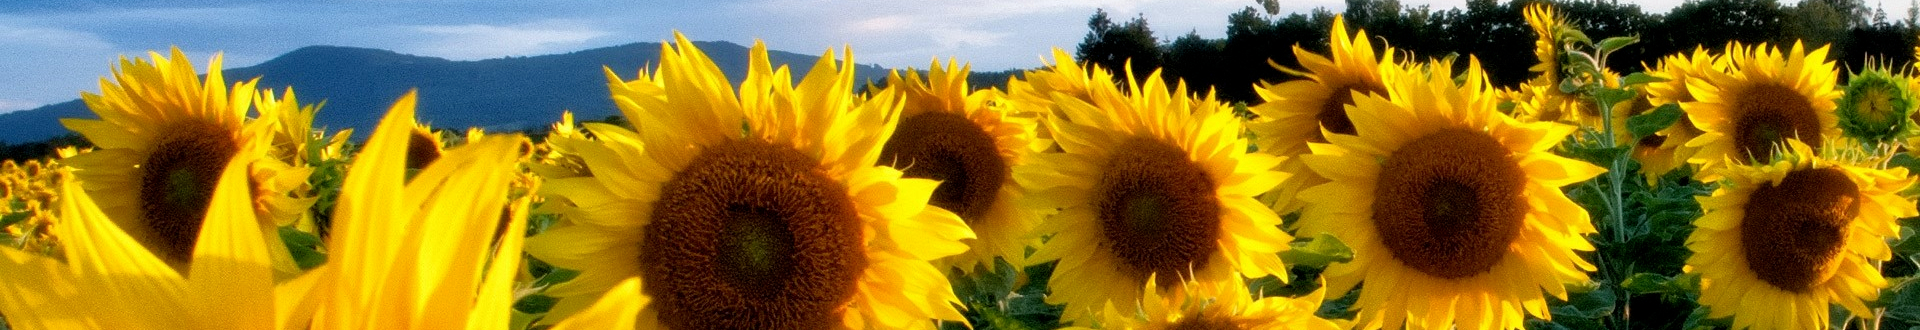 Sunflower_head.jpeg